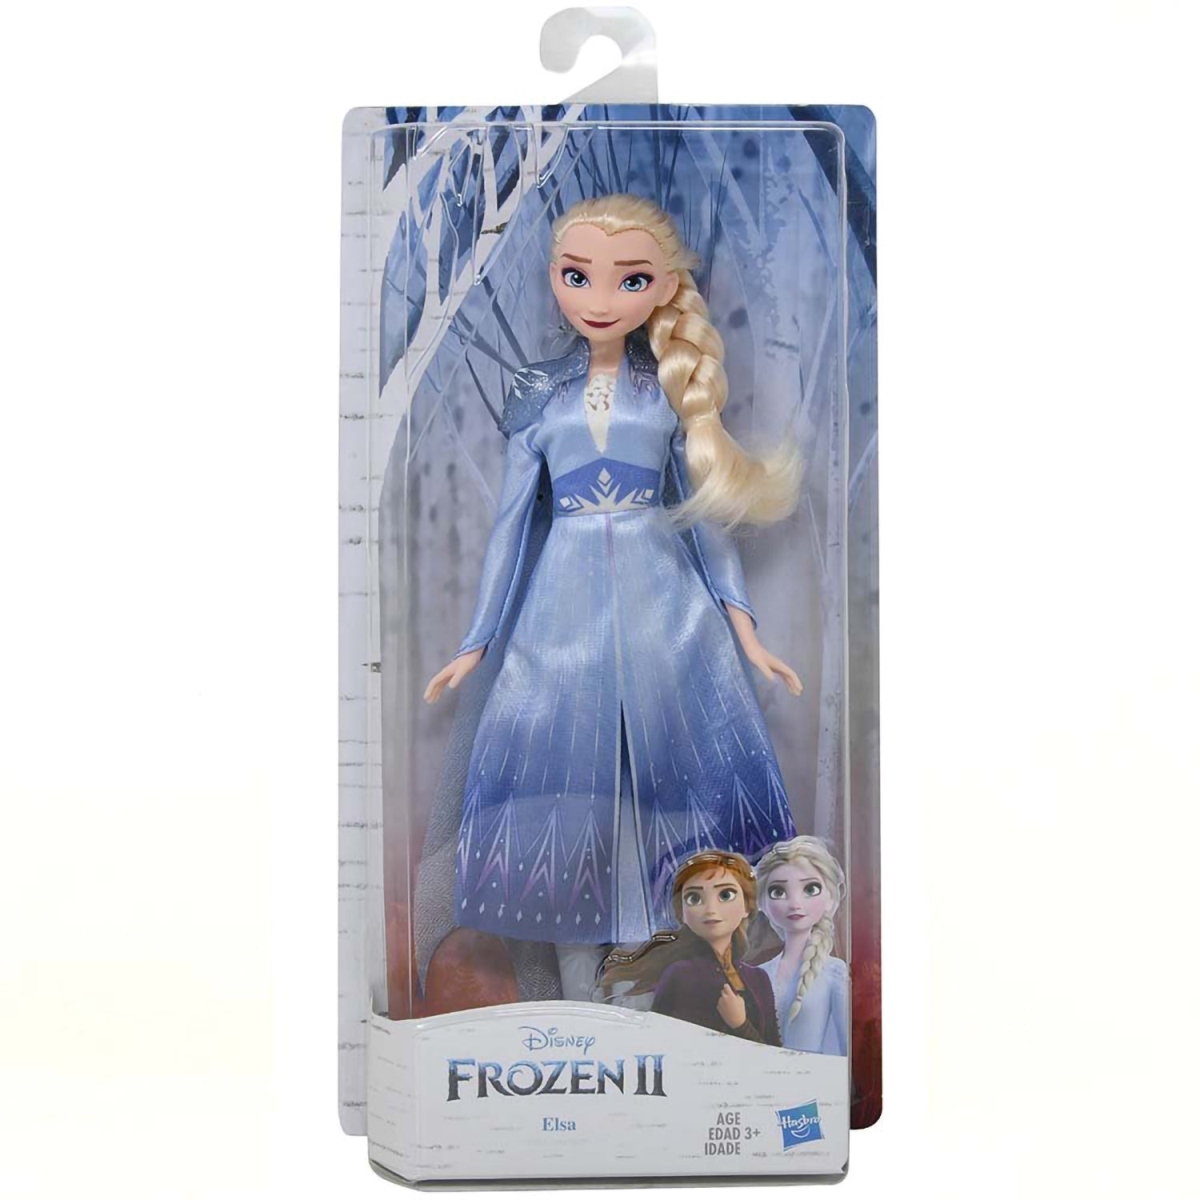 Picture of Disney 30393090 12 in. Frozen II Elsa Fashion Doll